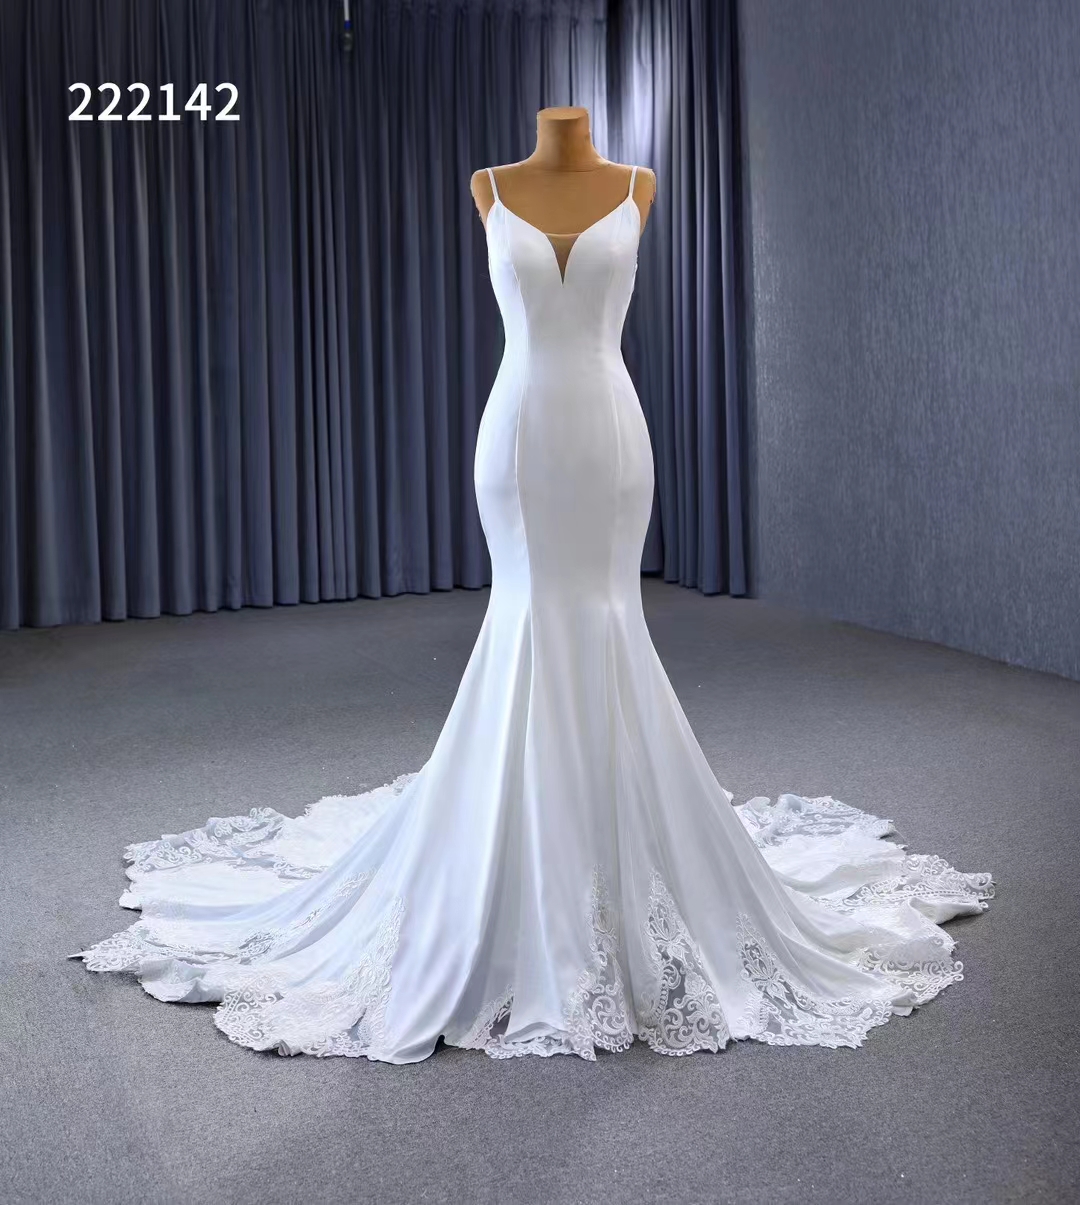 Русалка свадебное платье спагетти ремешок для ремня аппликации проста белый SM 222142